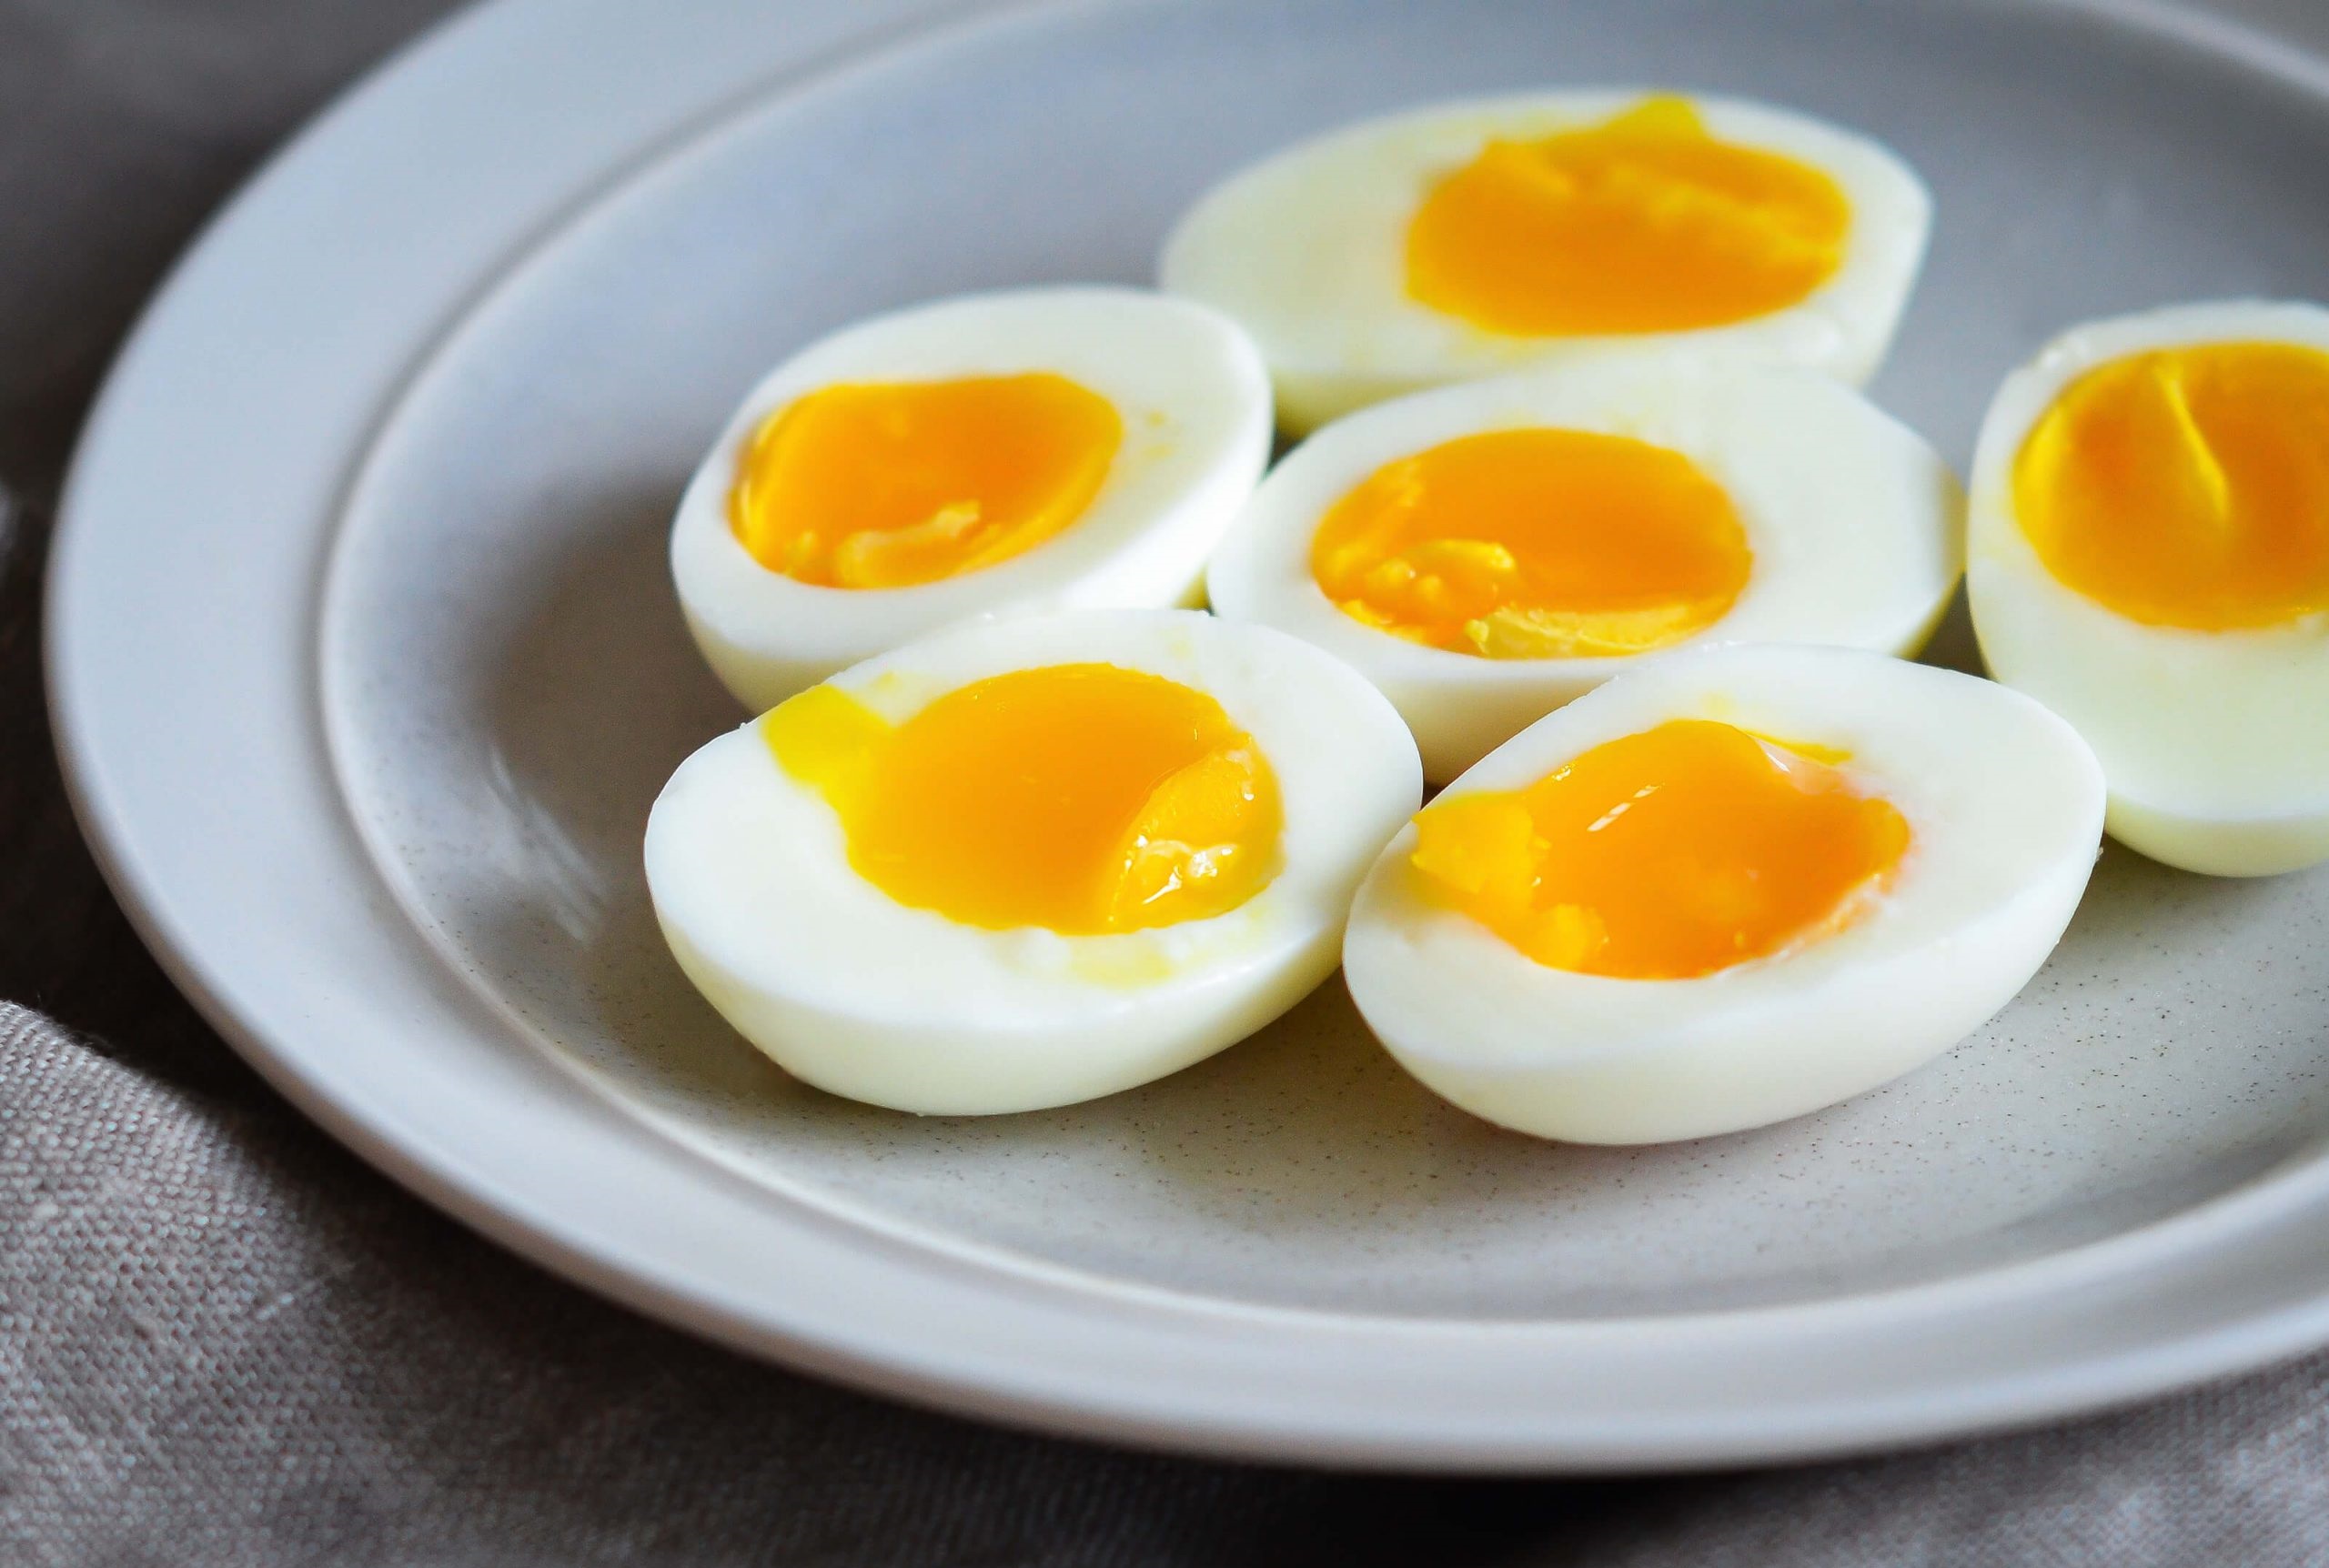 تخم مرغ آبپز عسلی - زمان لازم برای پخت تخم مرغ